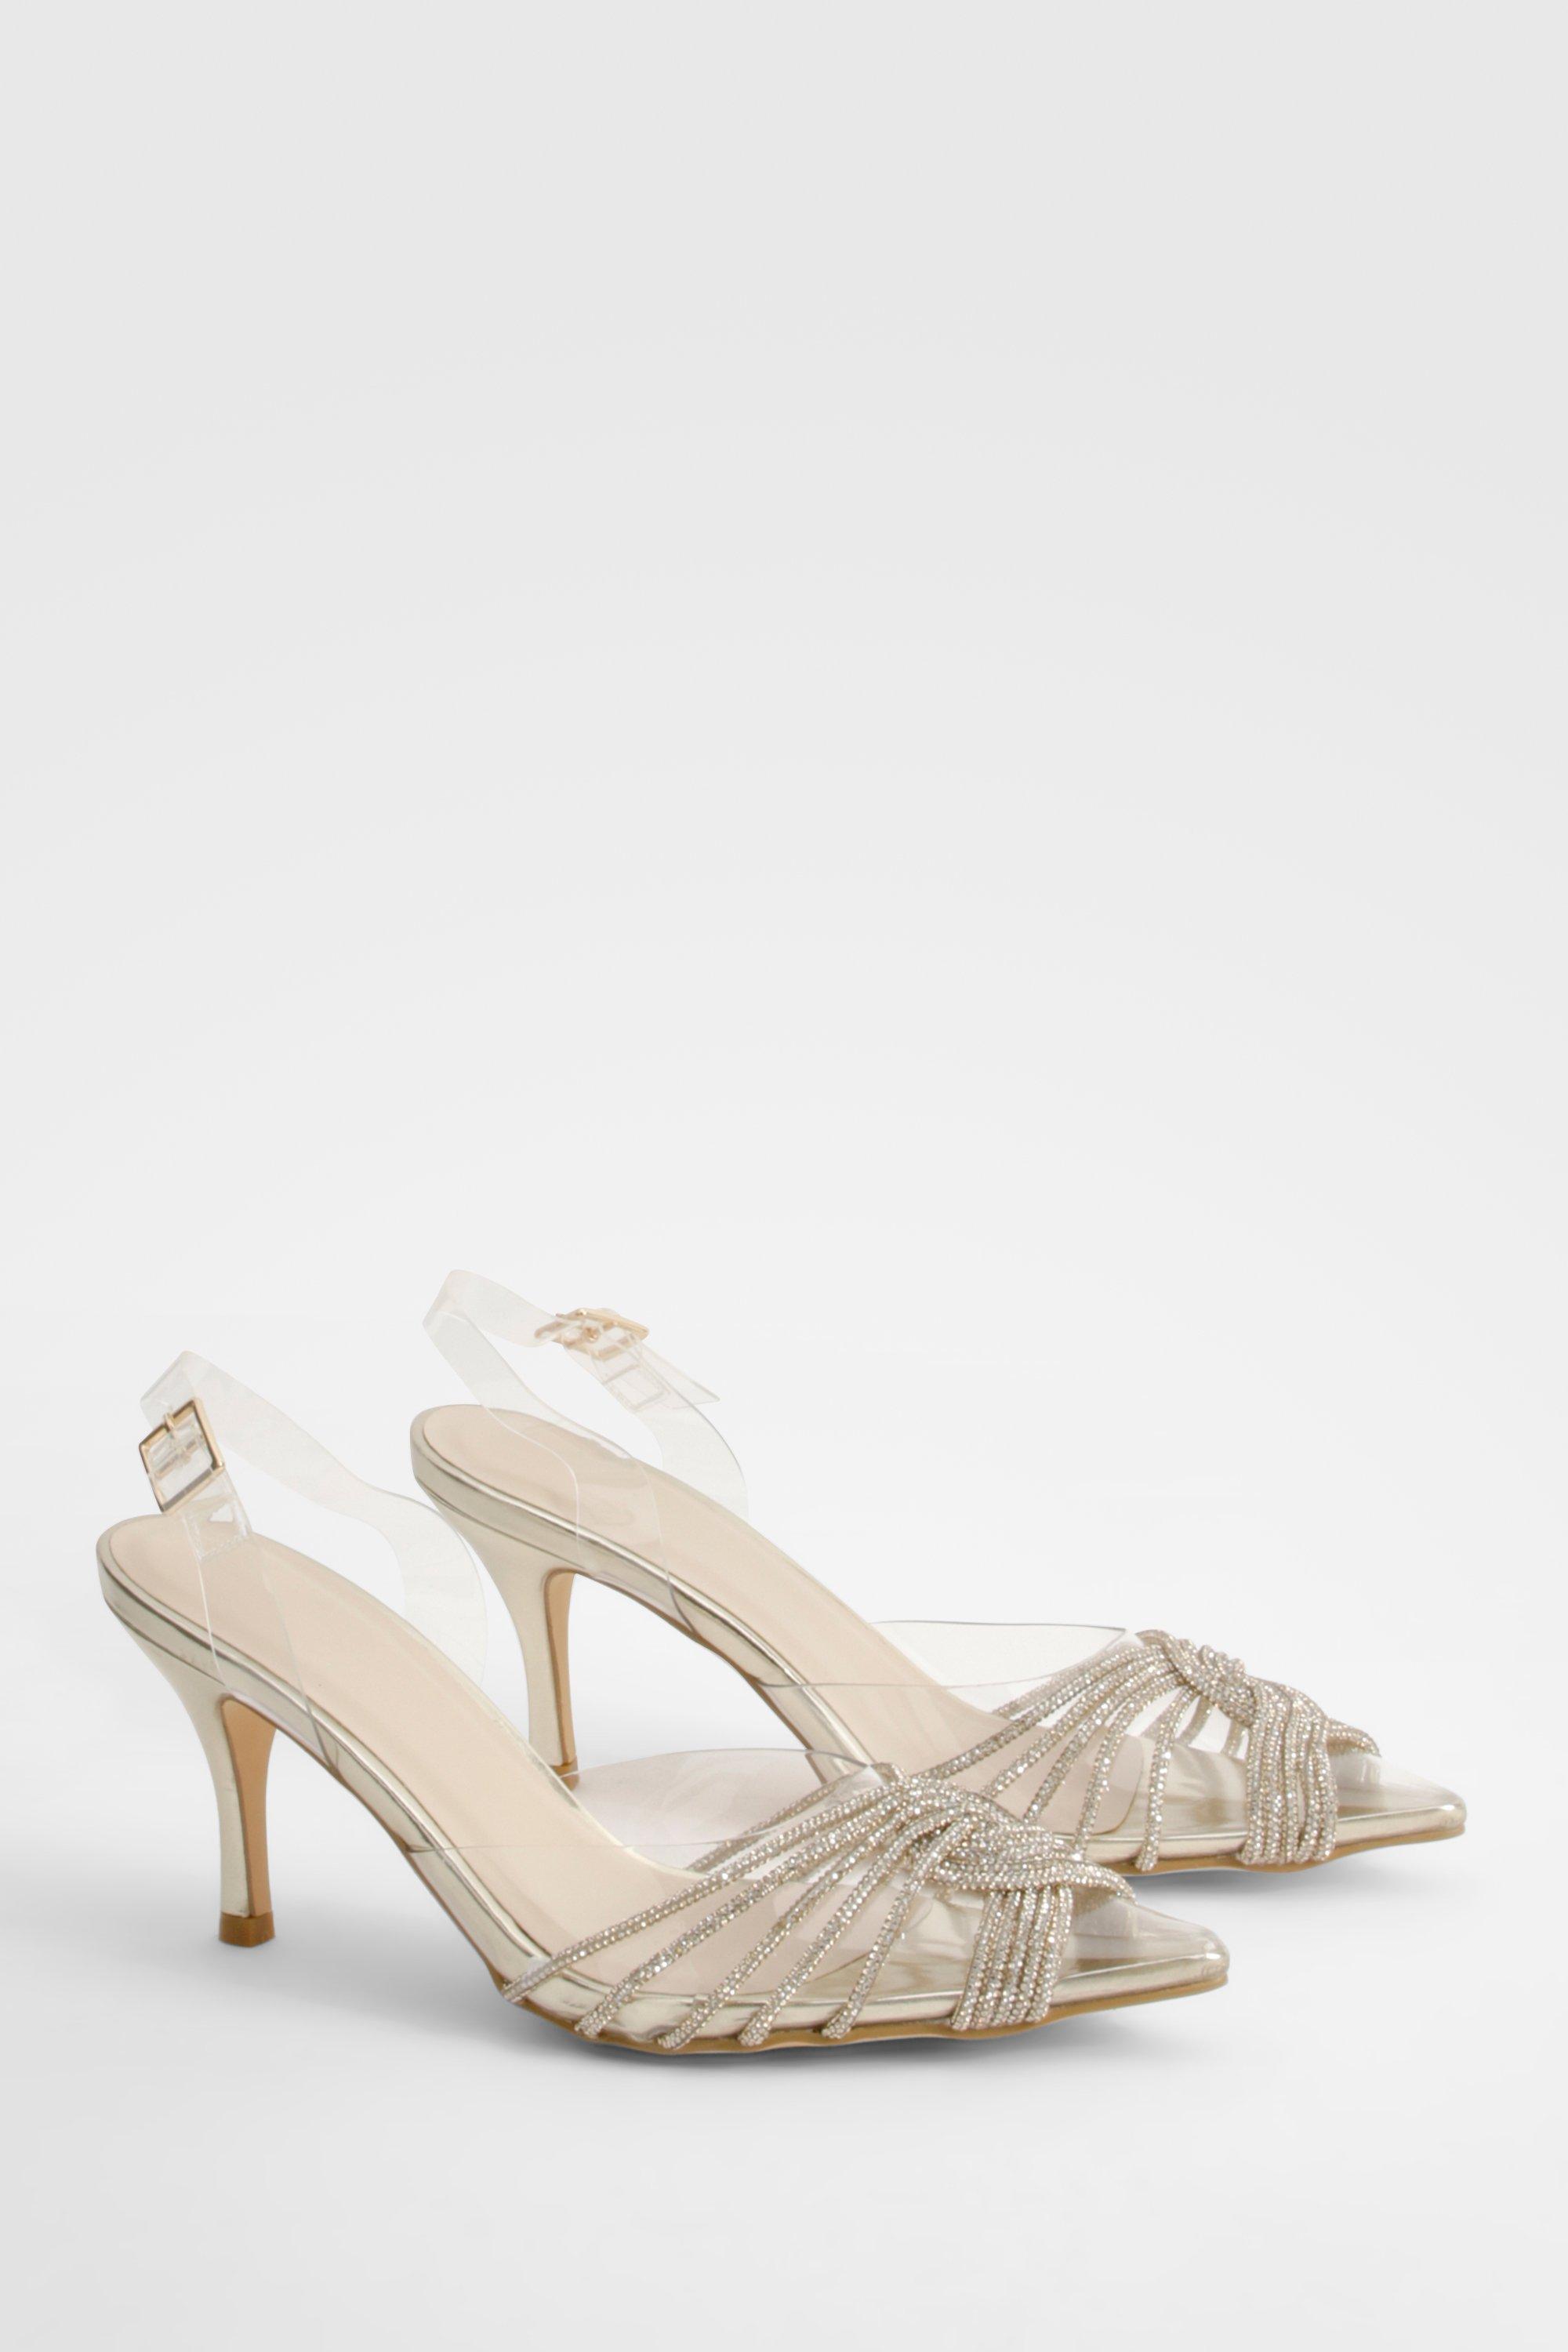 Image of Embellished Clear Slingback Court Heels, Metallics